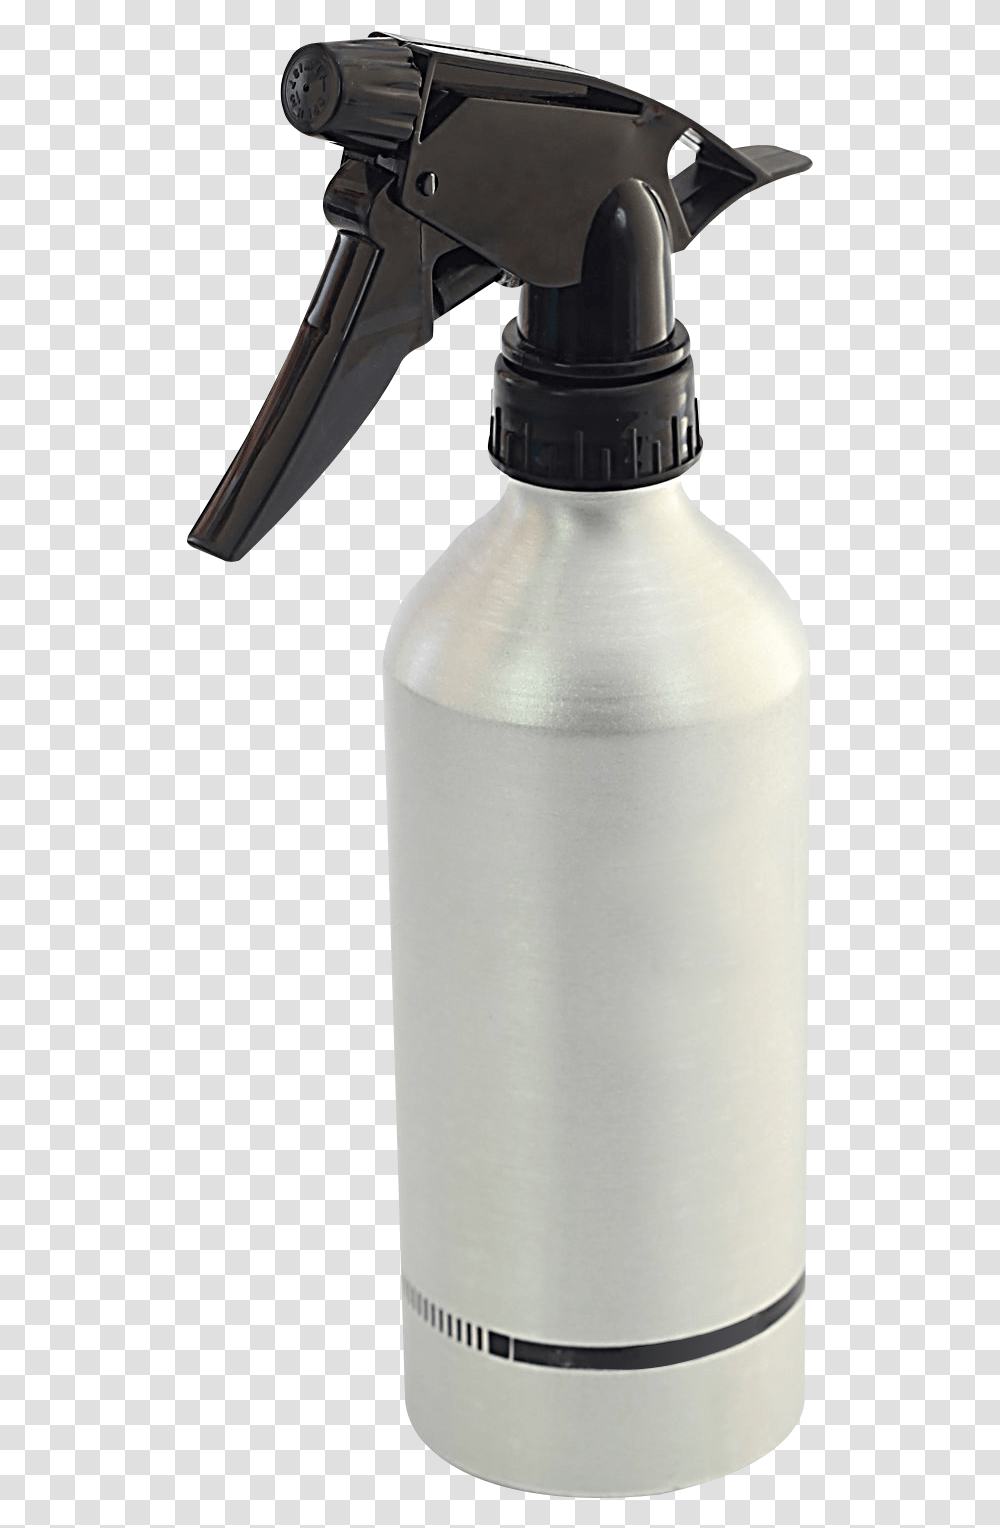 Spray Bottle Image For Free Download Spray Bottle Background, Milk, Beverage, Drink, Shaker Transparent Png